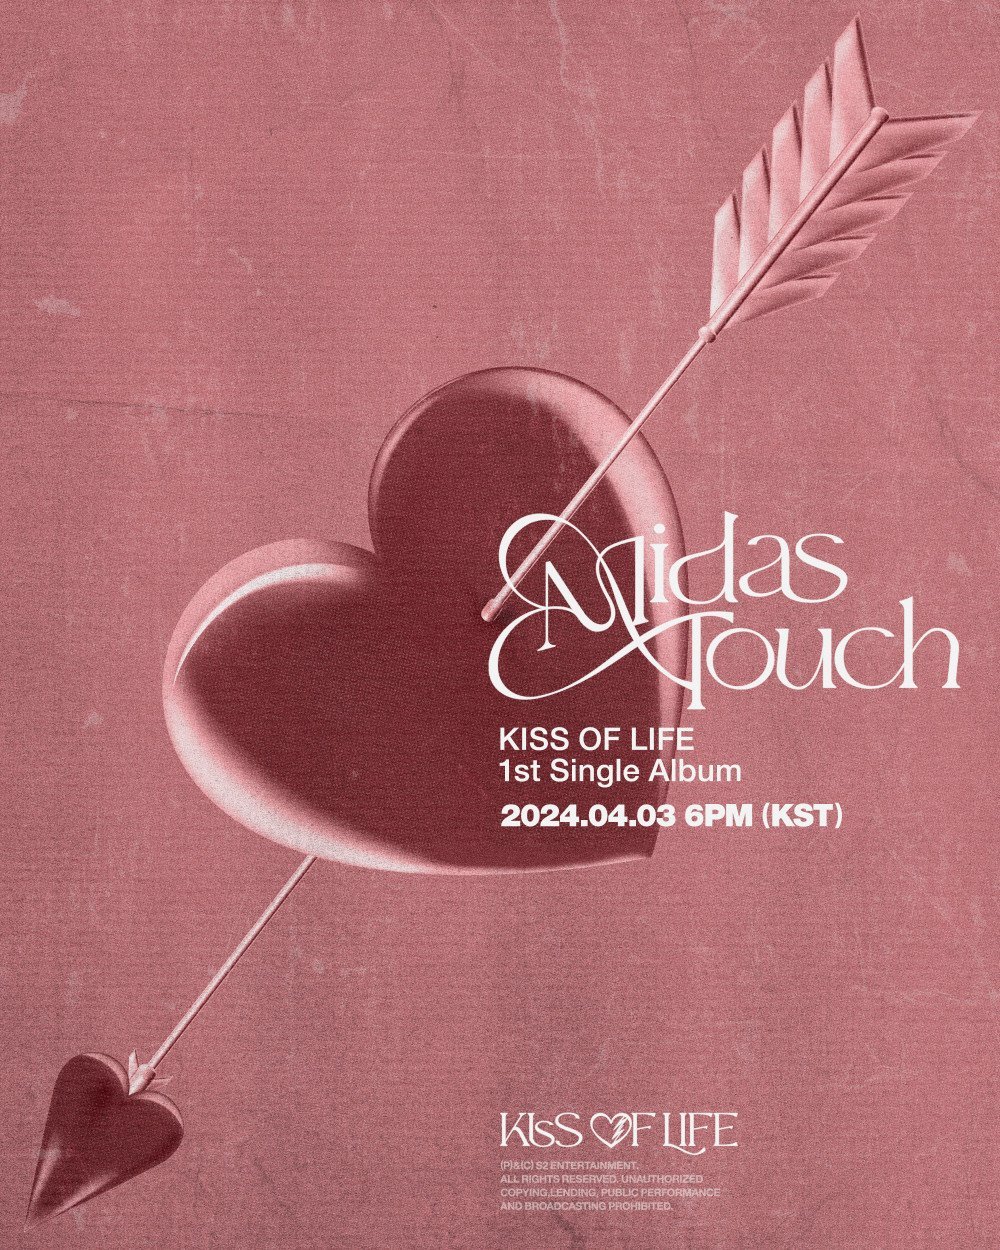 [Камбэк] KISS OF LIFE "Midas Touch": музыкальное видео